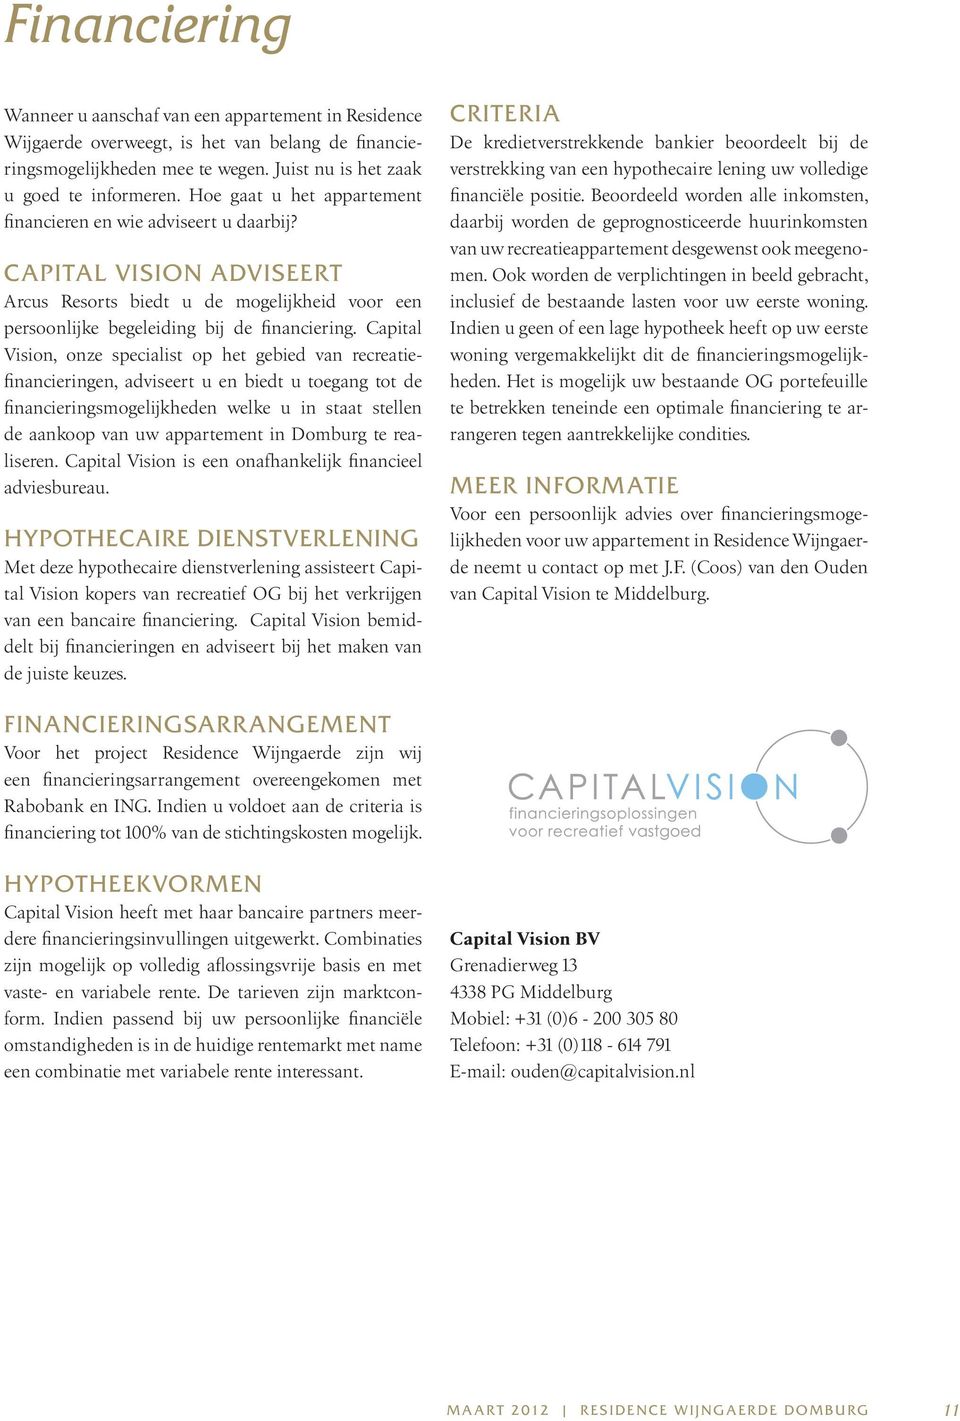 Capital Vision, onze specialist op het gebied van recreatiefinancieringen, adviseert u en biedt u toegang tot de financieringsmogelijkheden welke u in staat stellen de aankoop van uw appartement in